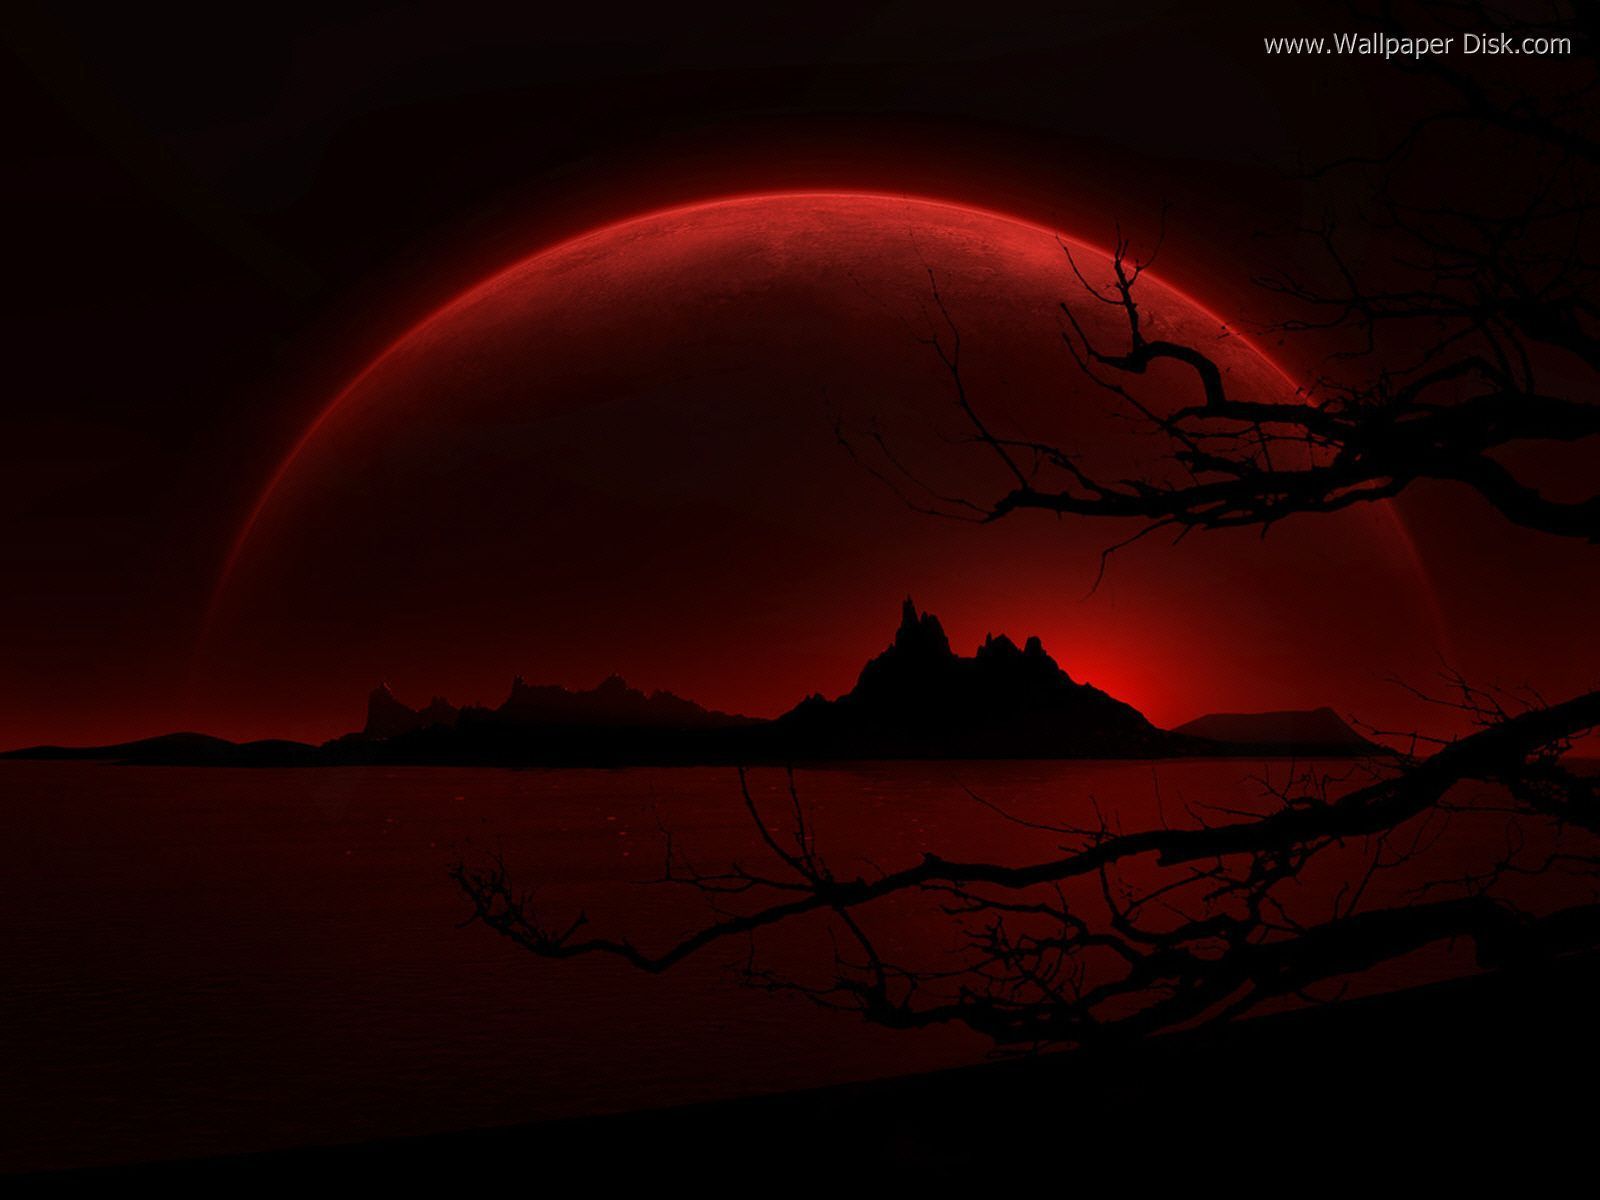 Mặt trăng đỏ tối là điều hiếm gặp và cũng đầy thú vị. Với sắc đỏ óng ánh, nó mang đến cảm giác ma mị và điên rồ. Hãy chiêm ngưỡng hình ảnh về mặt trăng đỏ này để cảm nhận được sự đặc biệt và lạ lẫm của nó.